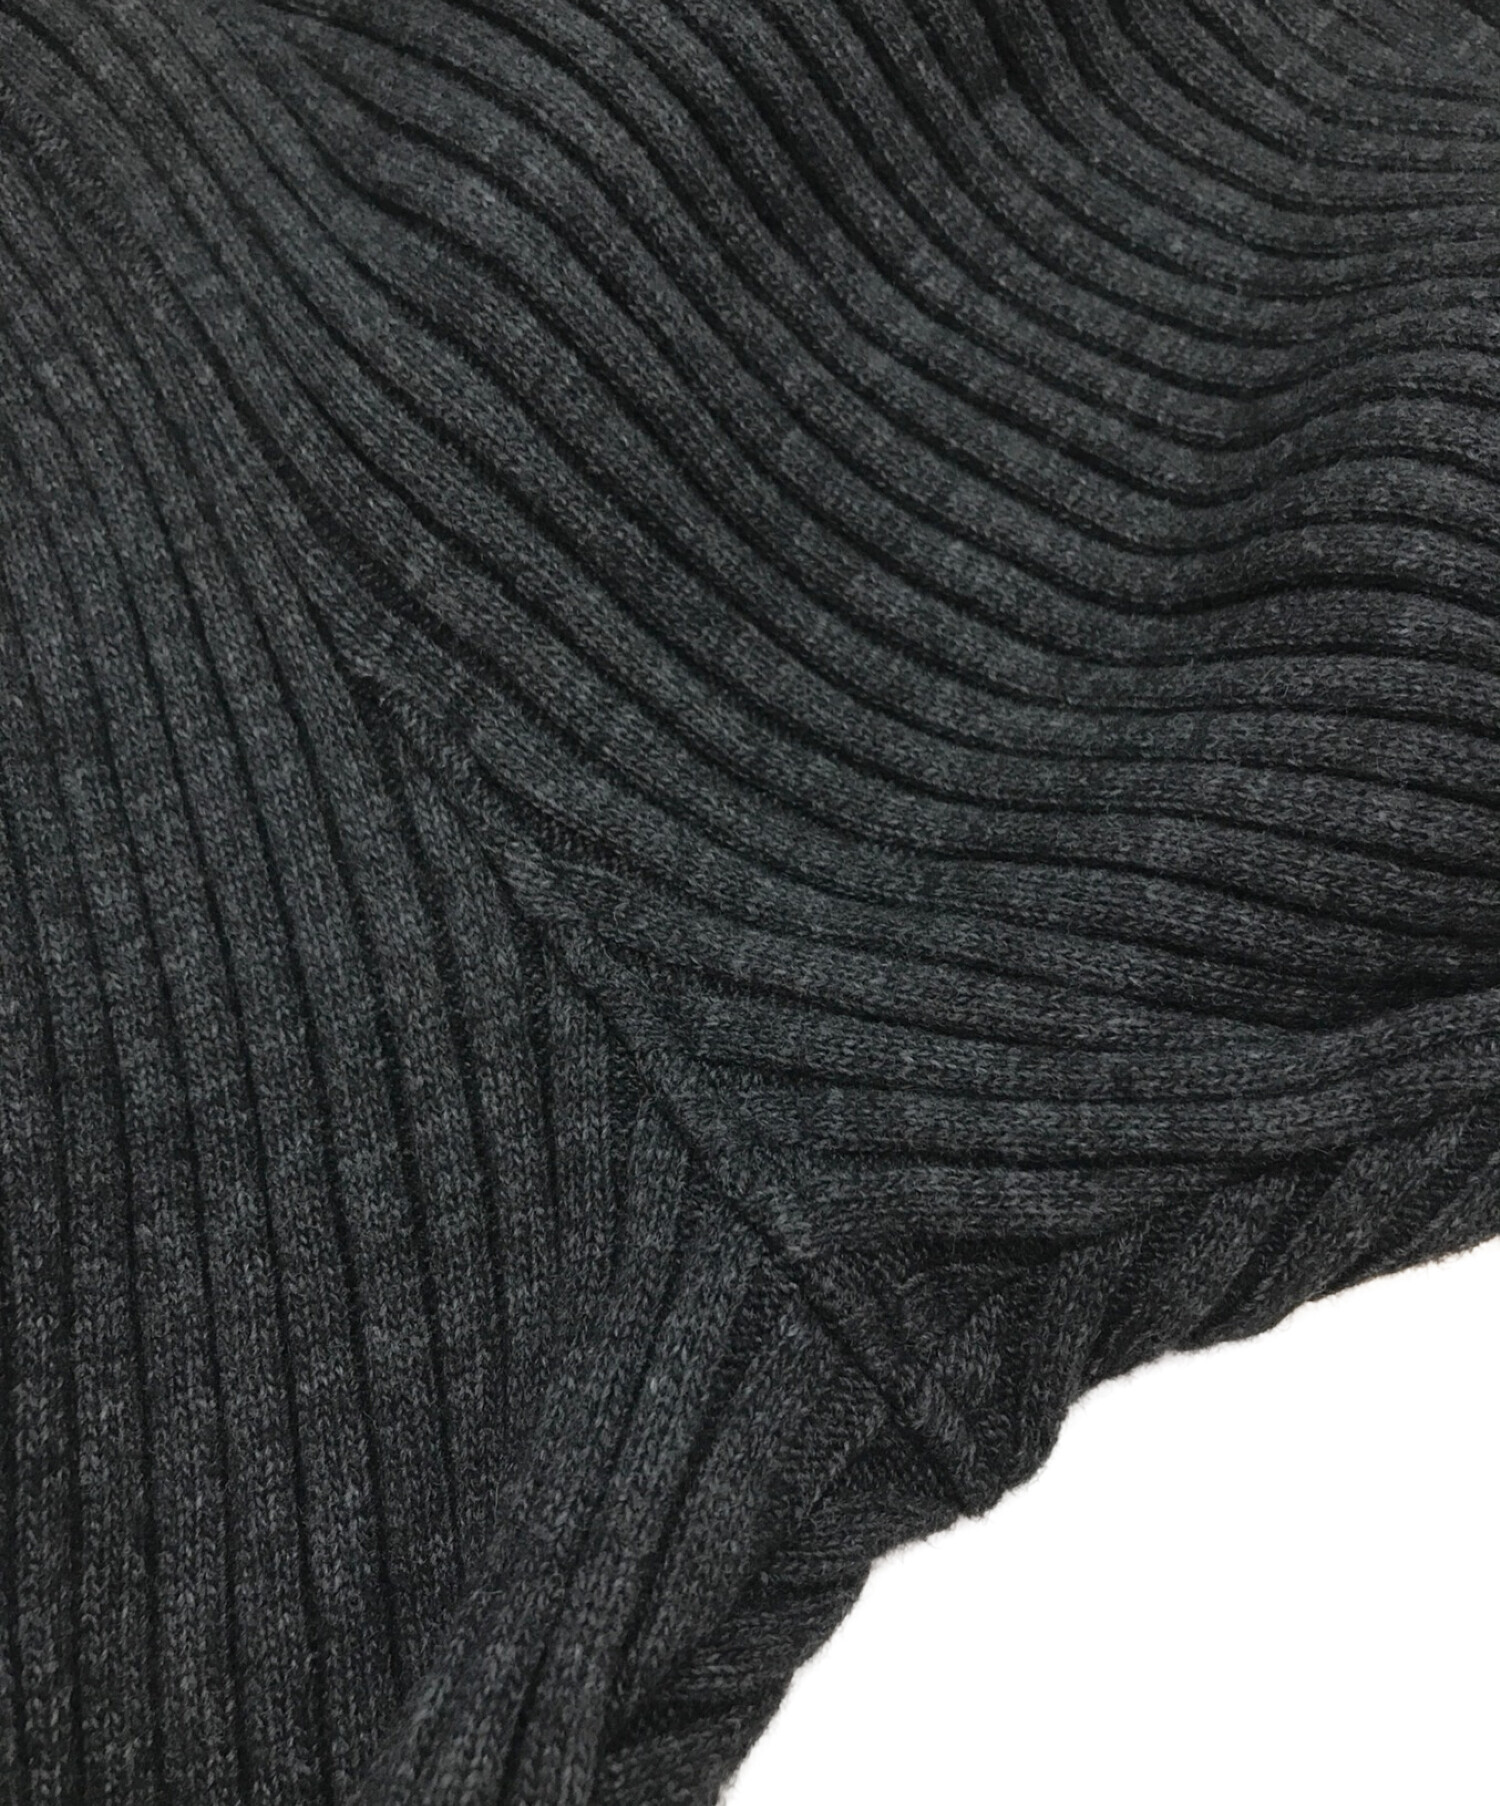 Rib knits – Fabricville